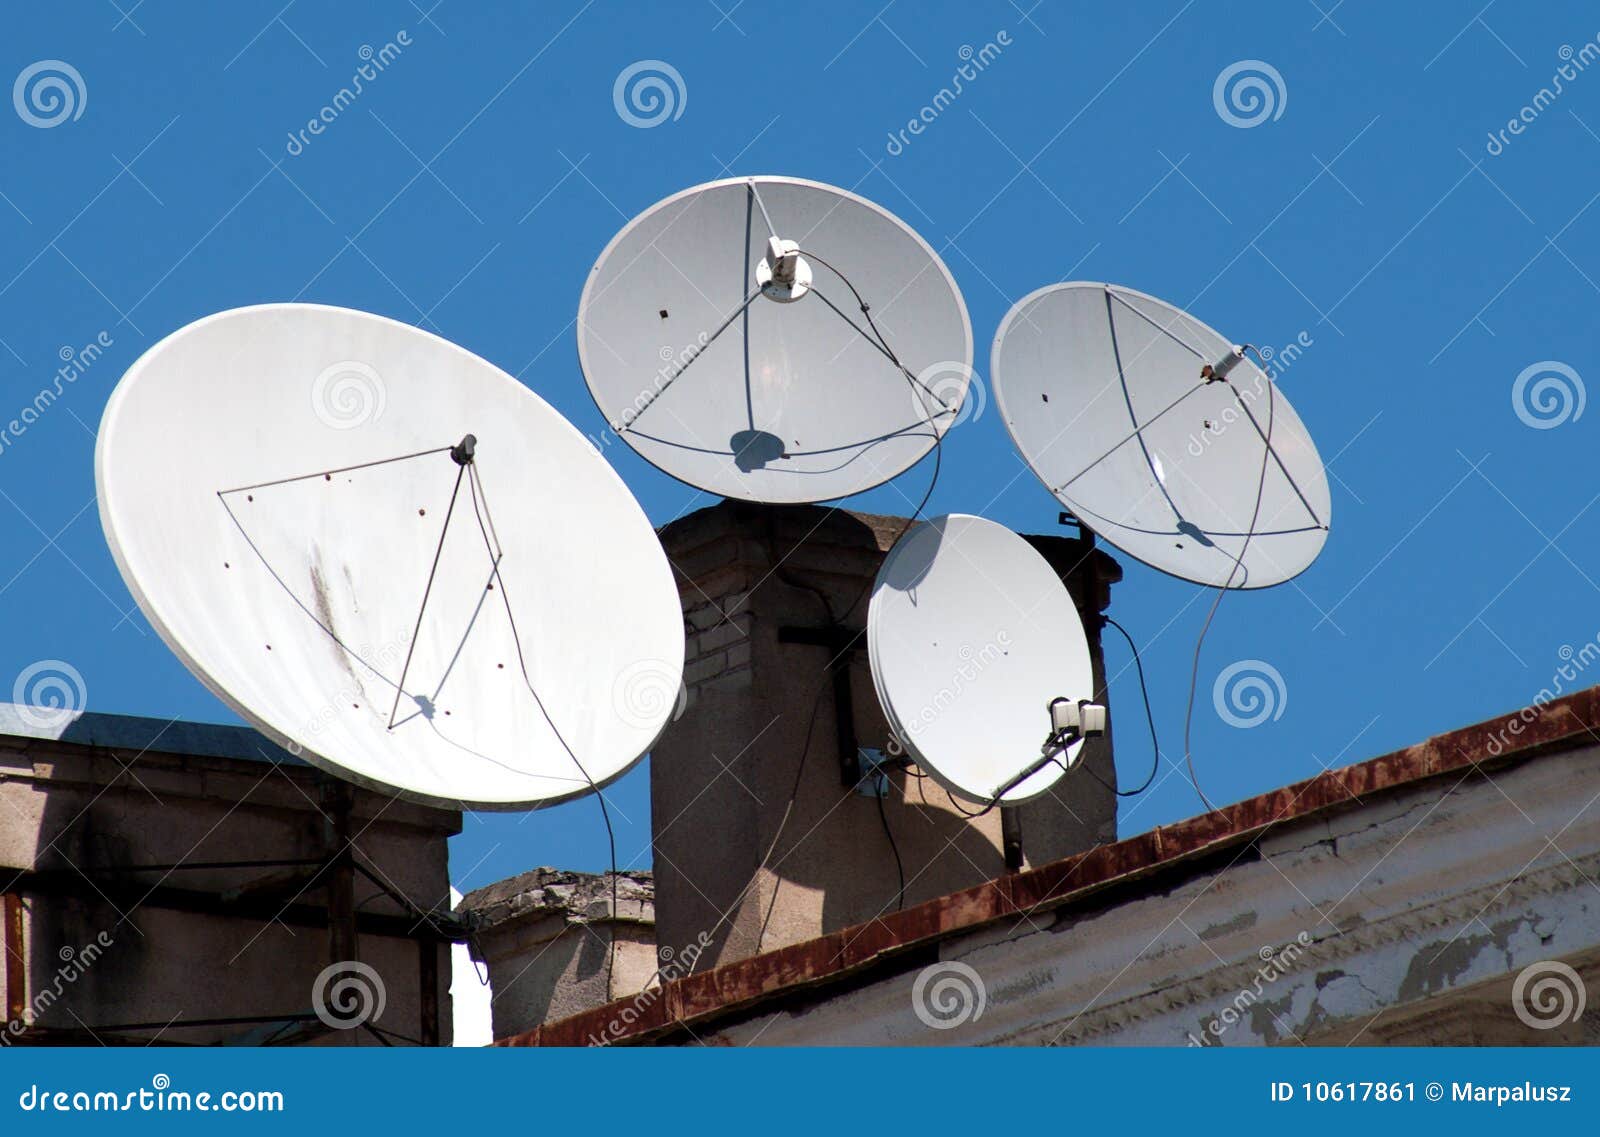 four satellite dish antennas